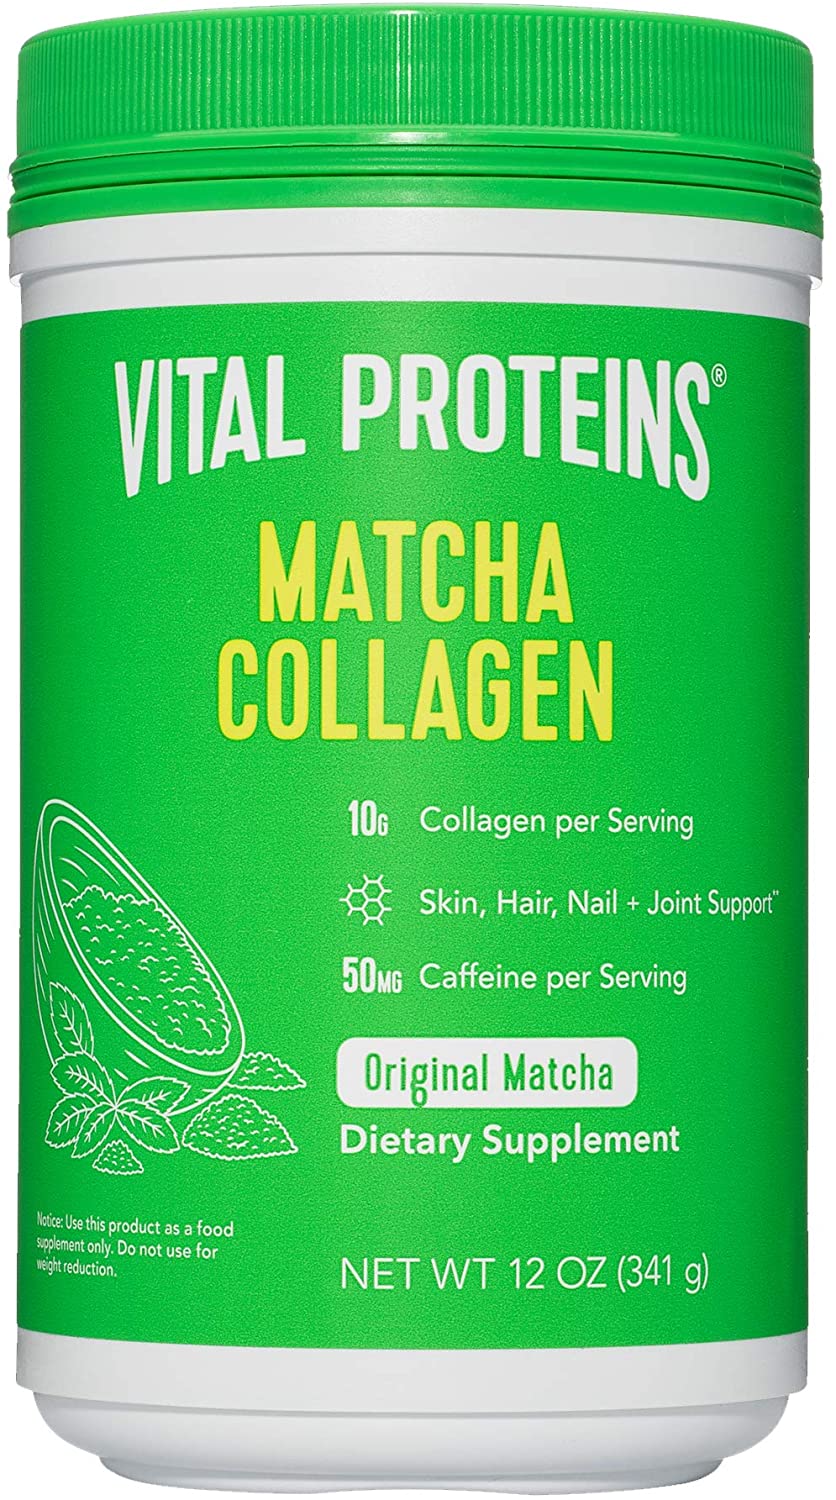 Vital Proteins Matcha Collagen Peptides Powder - 12 oz